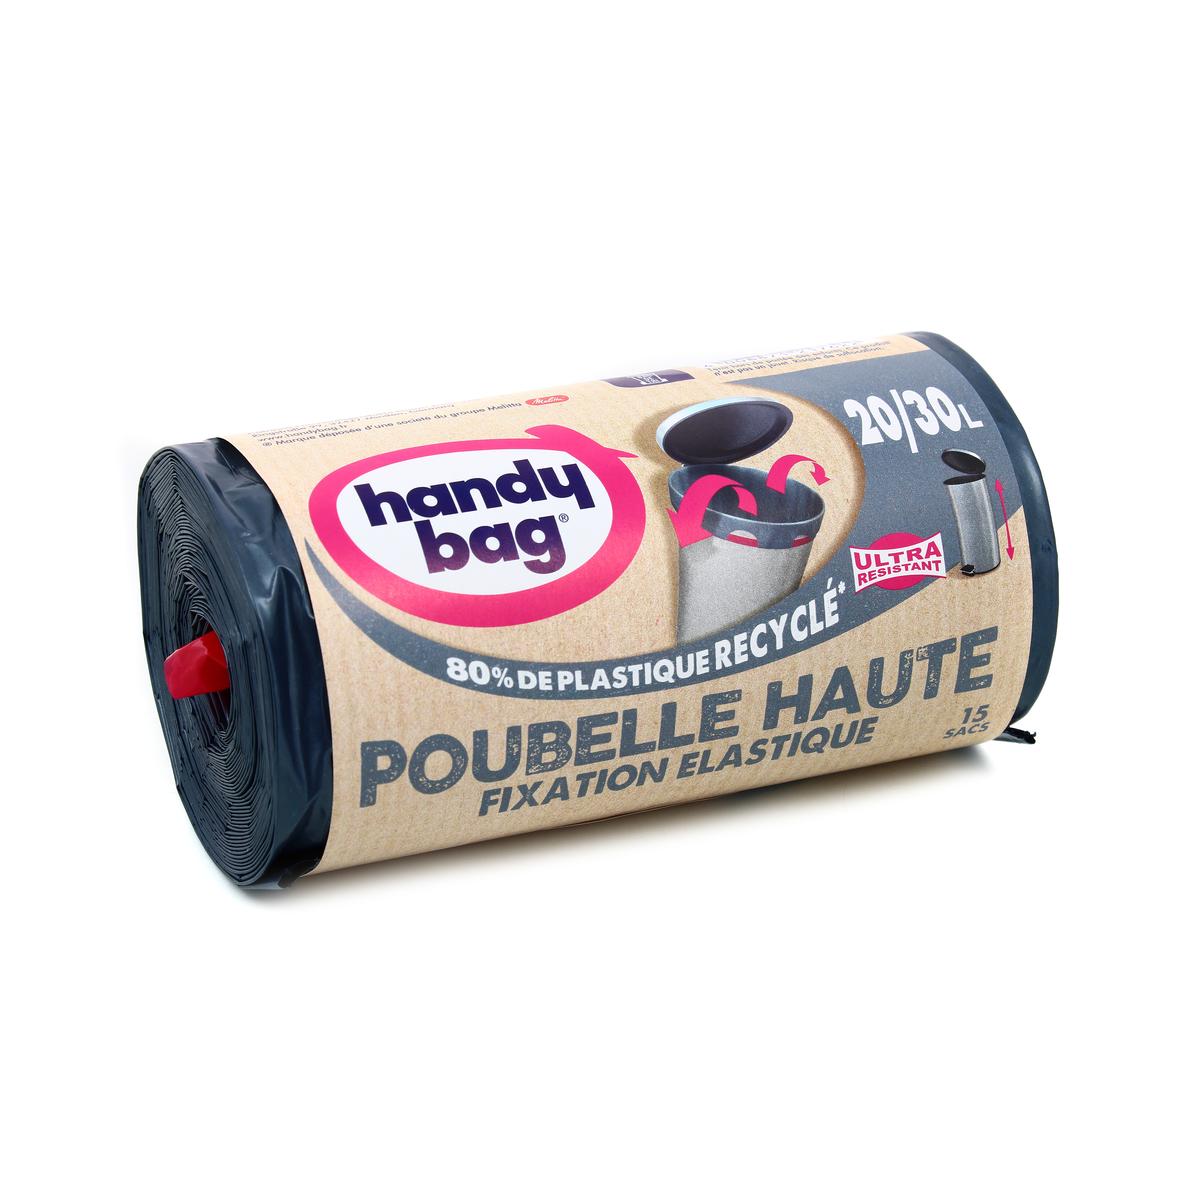 Achat Handy Bag Sacs poubelle 30L - Protection active, 20 sacs de 30L